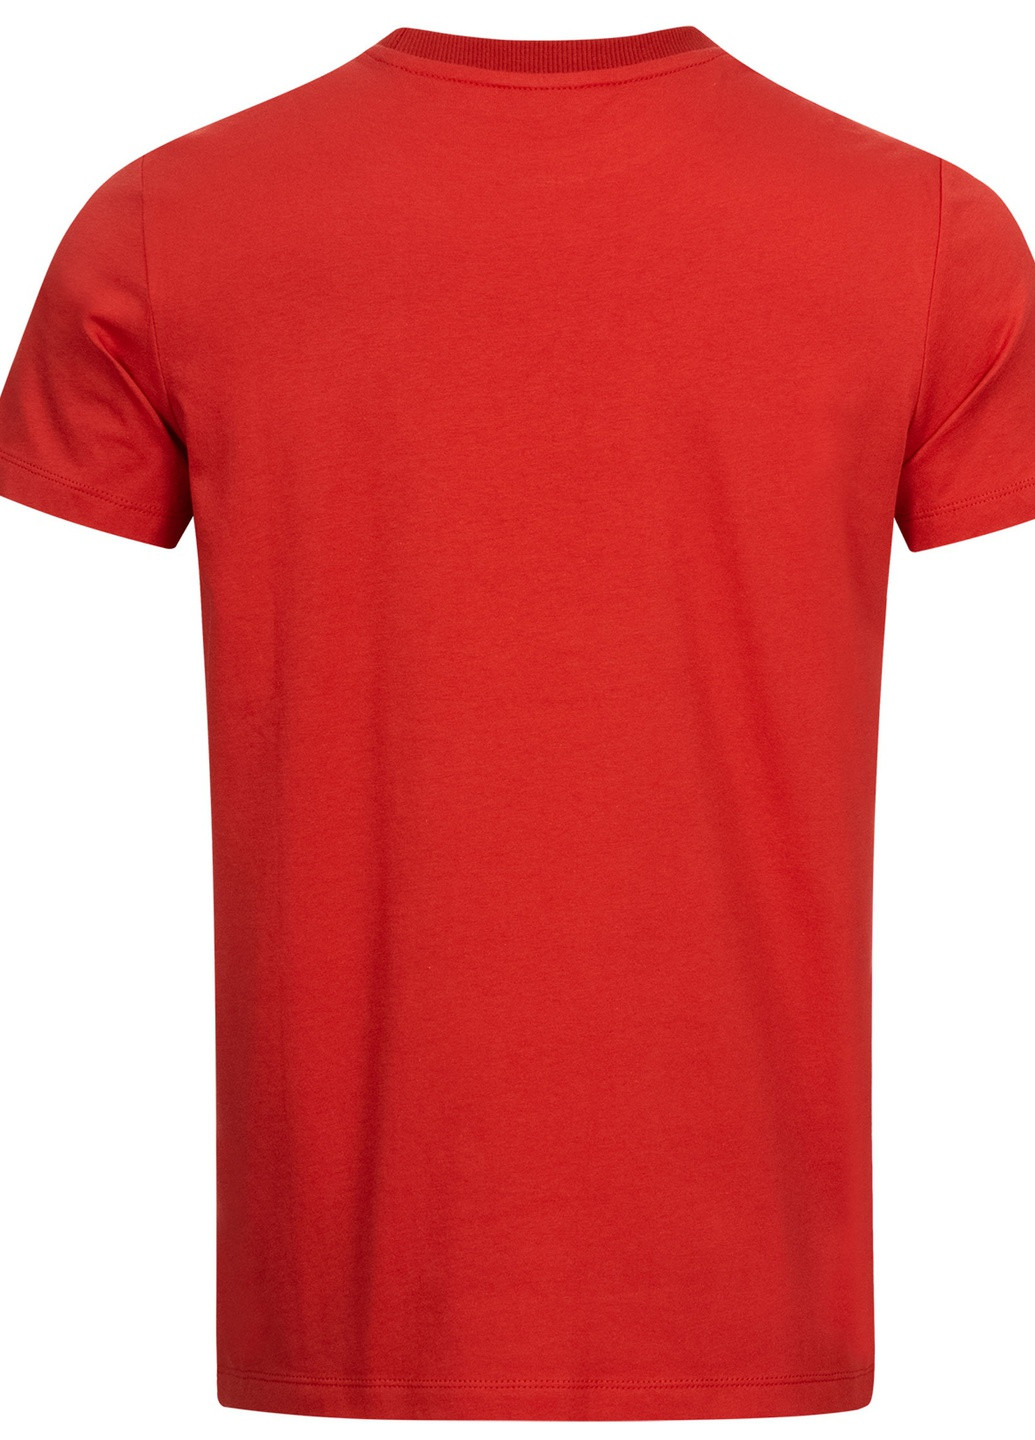 Красная футболка Lonsdale ST. ERNEY